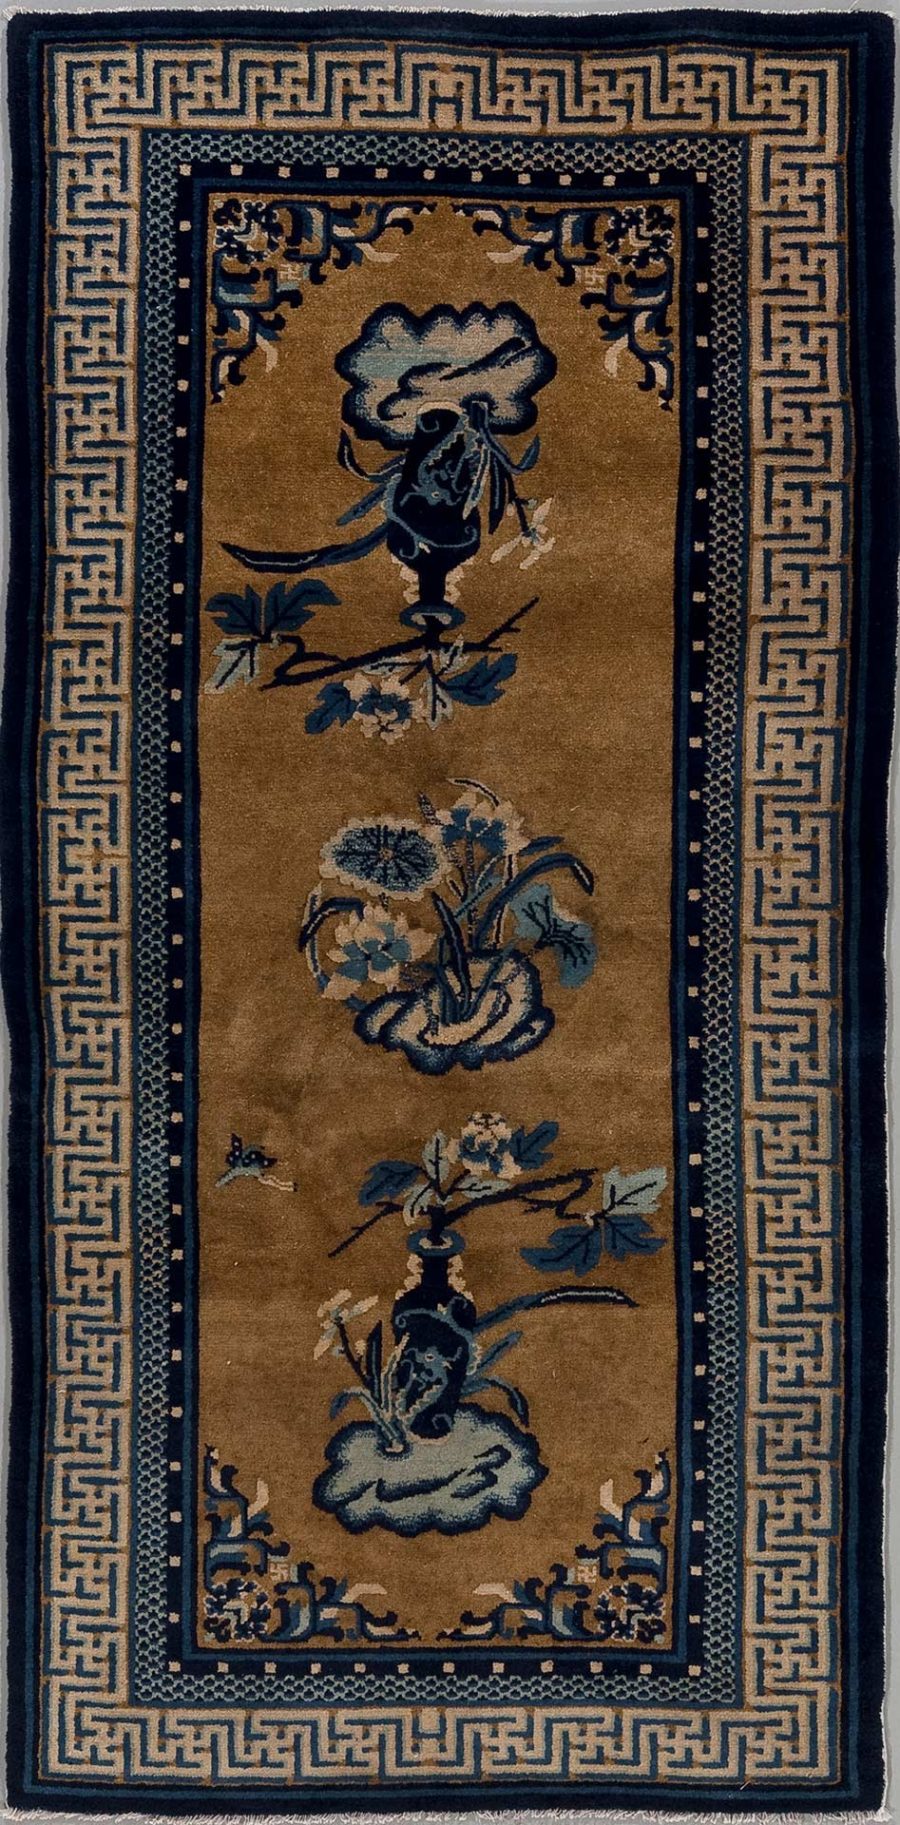 Länglicher, handgeknüpfter Teppich mit traditionellem asiatischem Design, hauptsächlich in Gold- und Blautönen. Die Bordüren zeigen ein griechisches Schlüsselmuster und kleinere dekorative Elemente. Das zentrale Motiv beinhaltet stilisierte Blumen und Vasen.